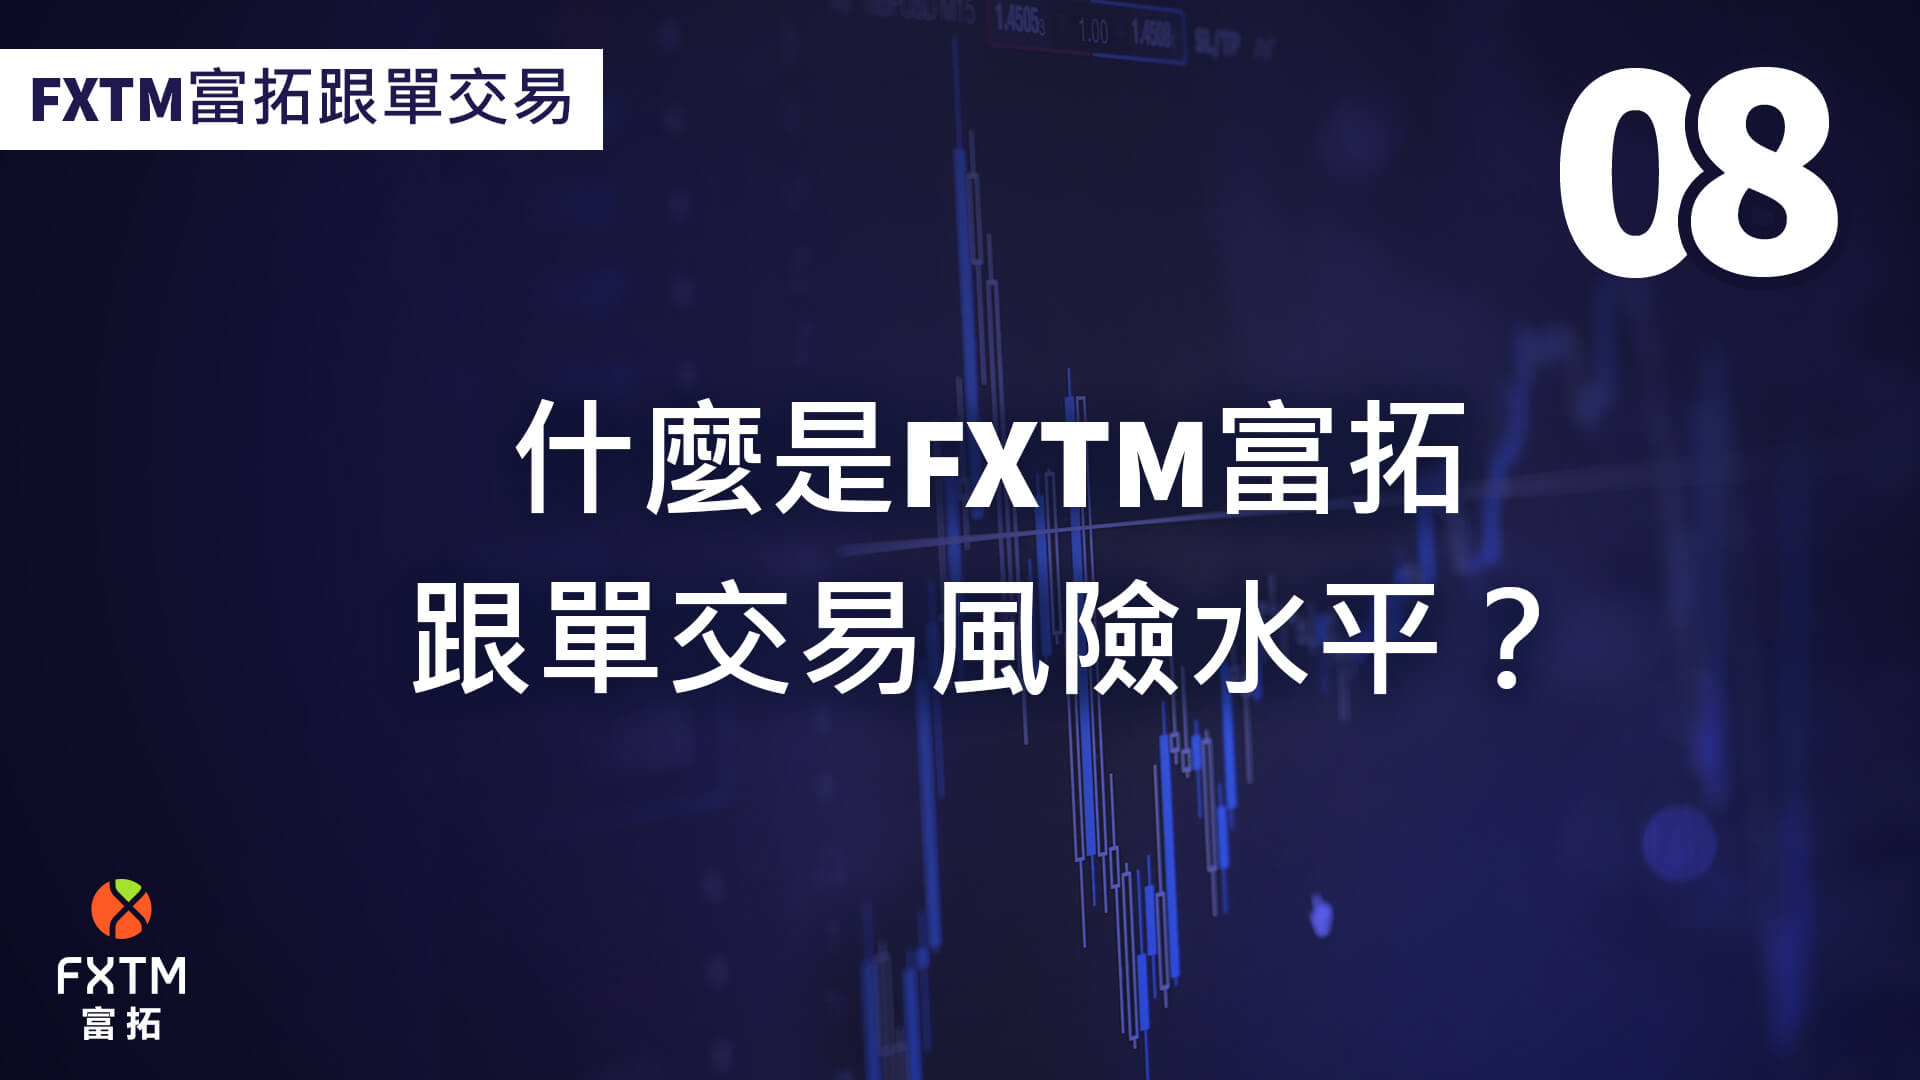 什麼是FXTM富拓跟單交易風險水平？ 